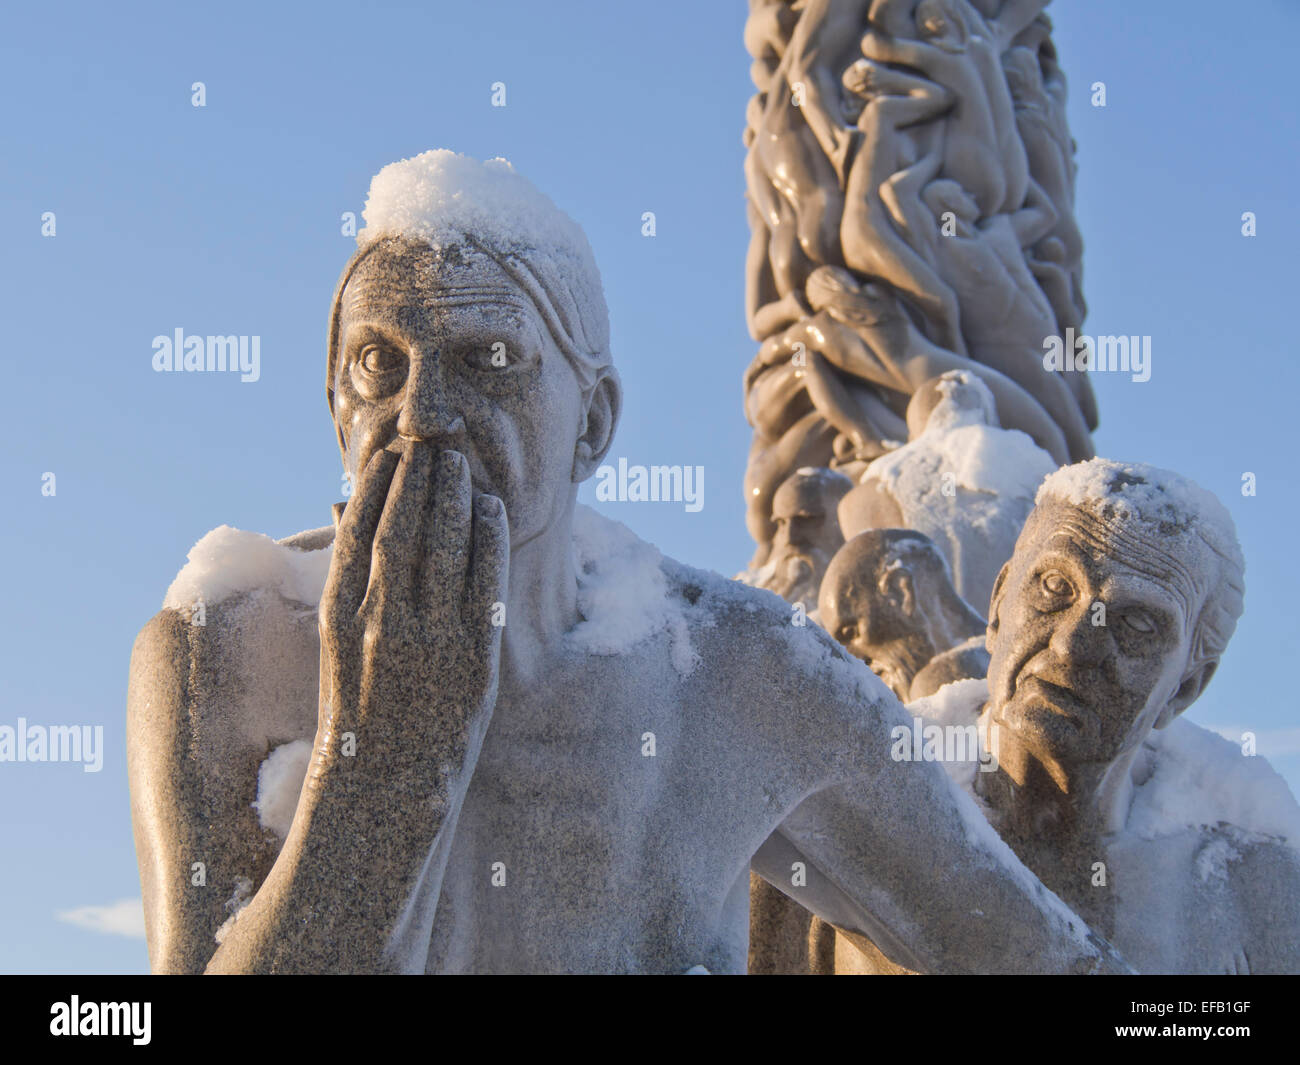 En hiver Vigelandsparken, Oslo Norvège, la neige donne à la finition spéciale sculptures de granit, vieux couple dans la lumière du soleil d'or Banque D'Images